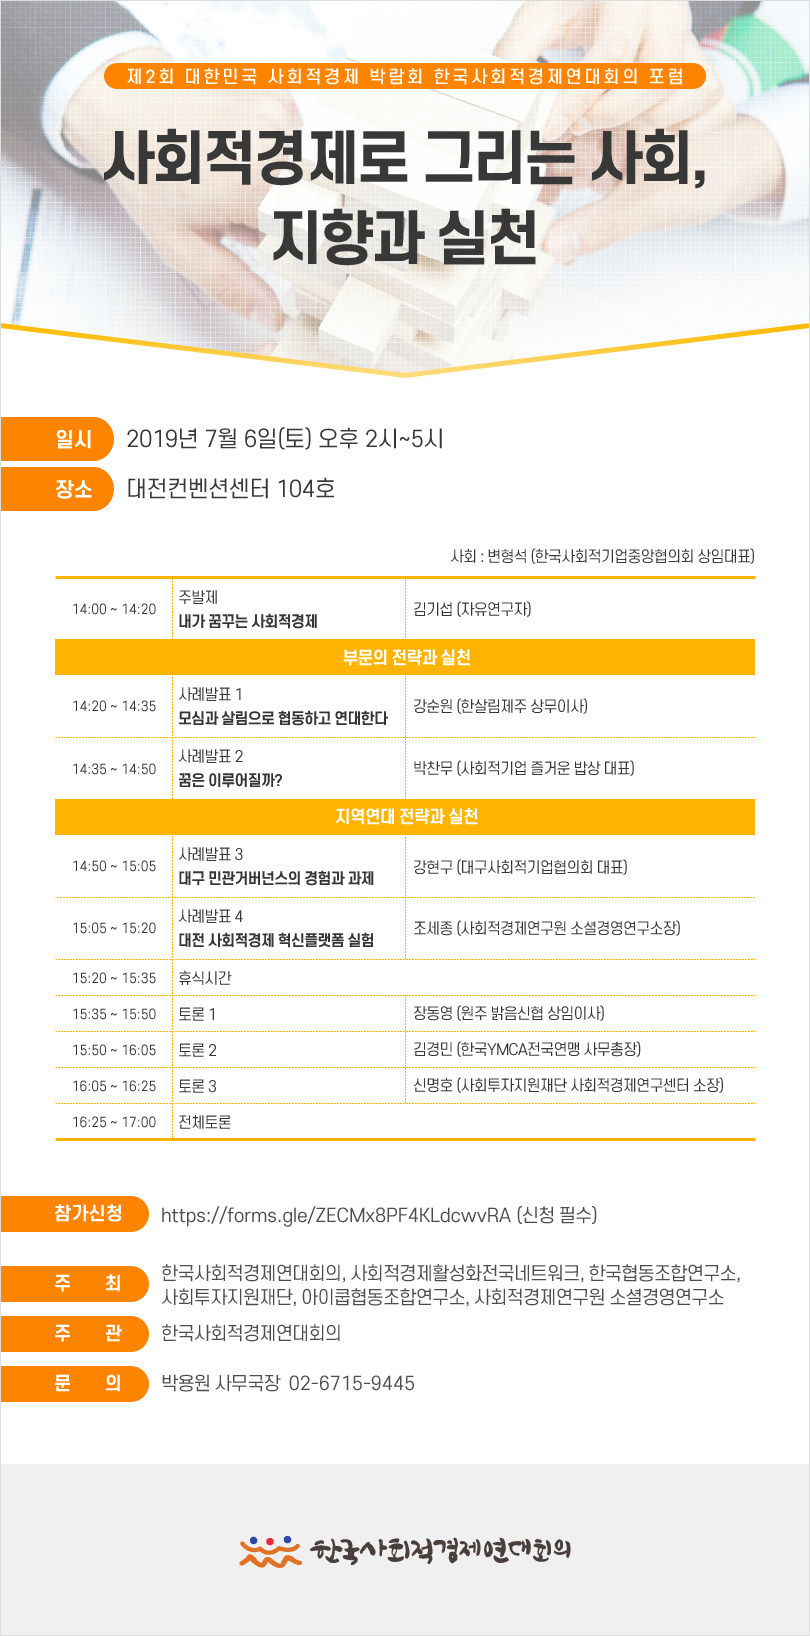 2019 대전 박람회 - 한국사회적경제연대회의 포럼 